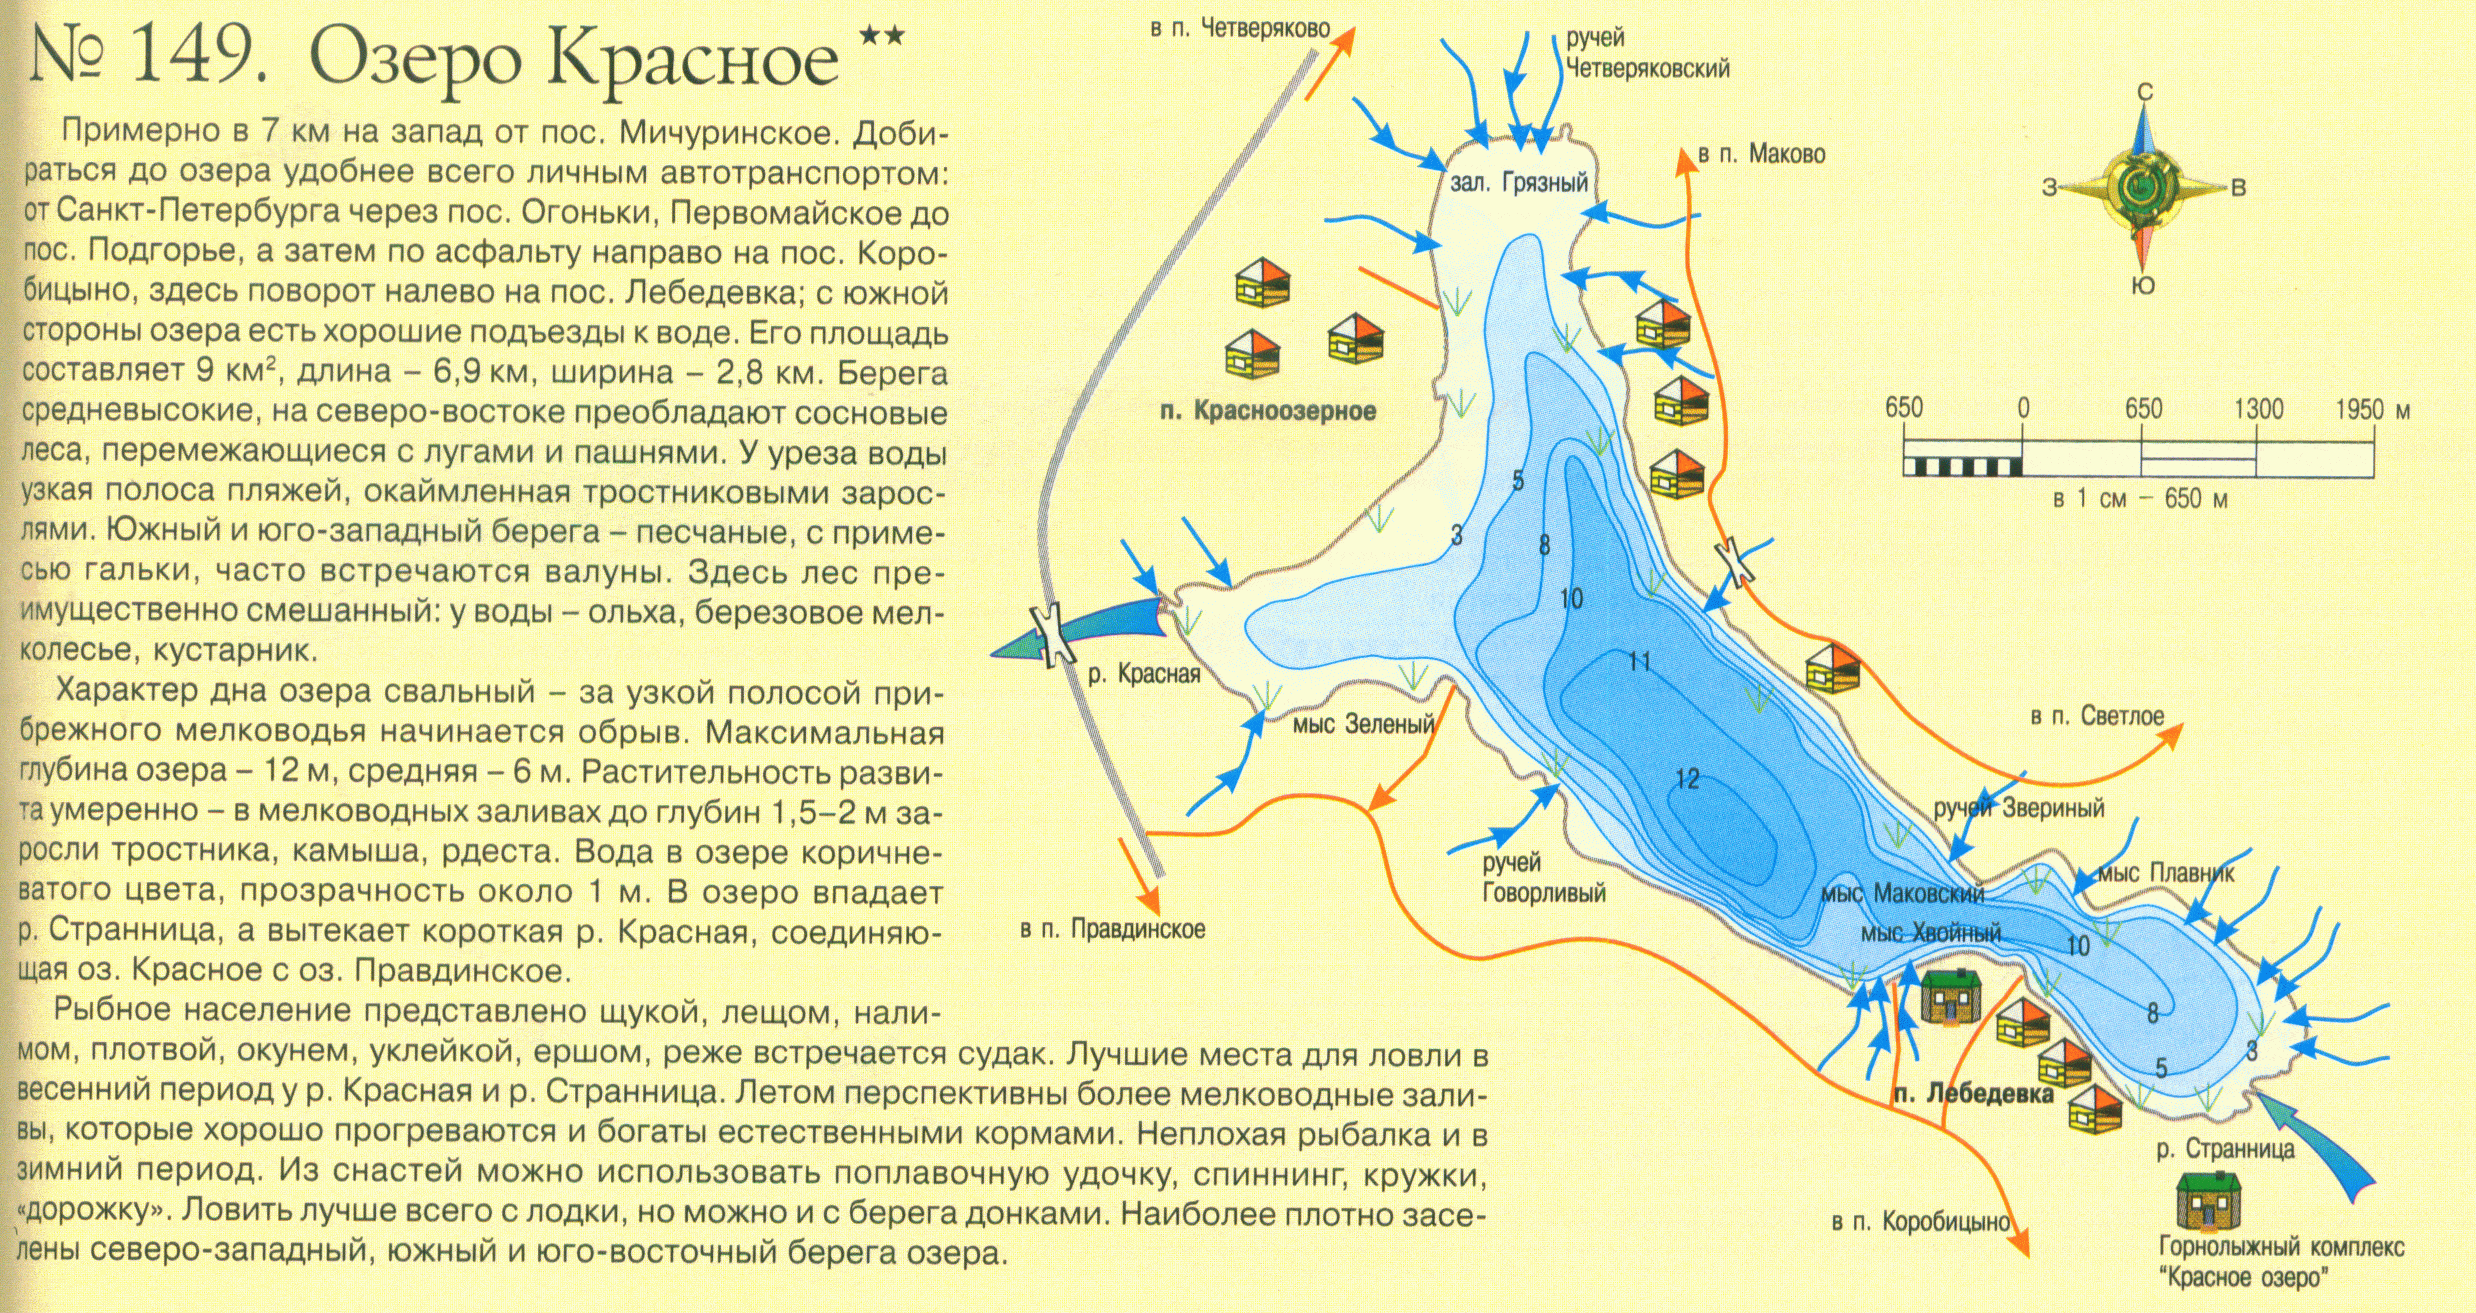 Рыболовные лучшие места в ленинградской области: описание озер, рек, способов ловли